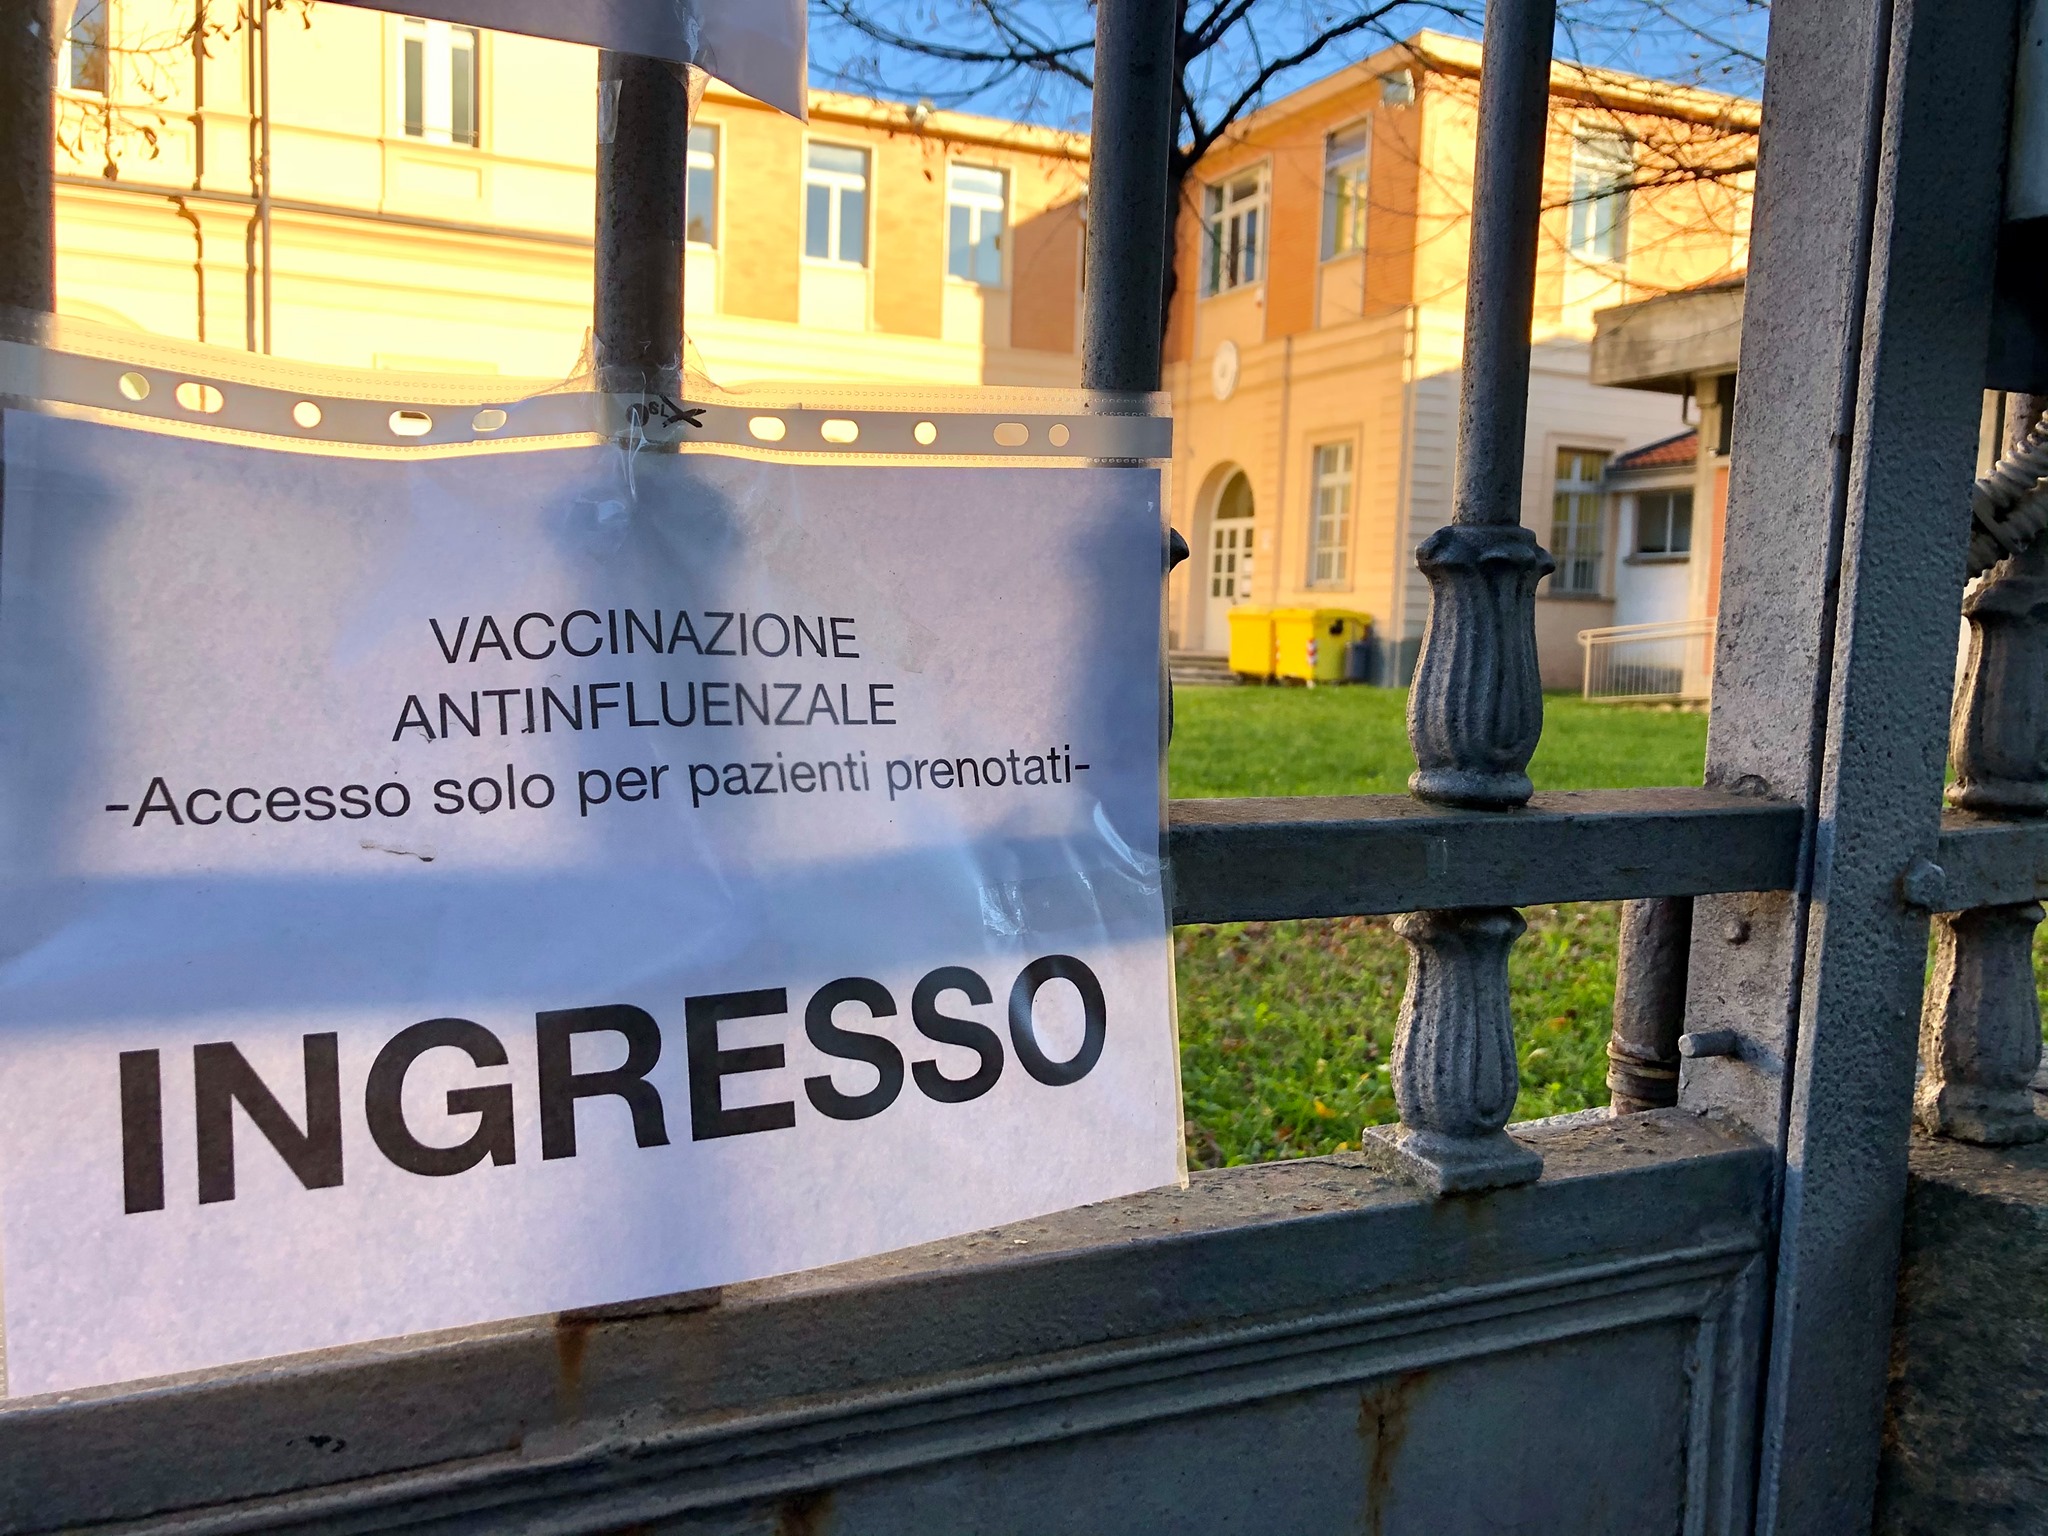 La scuola Mario Pivano di Saluzzo utilizzata come centro vaccini